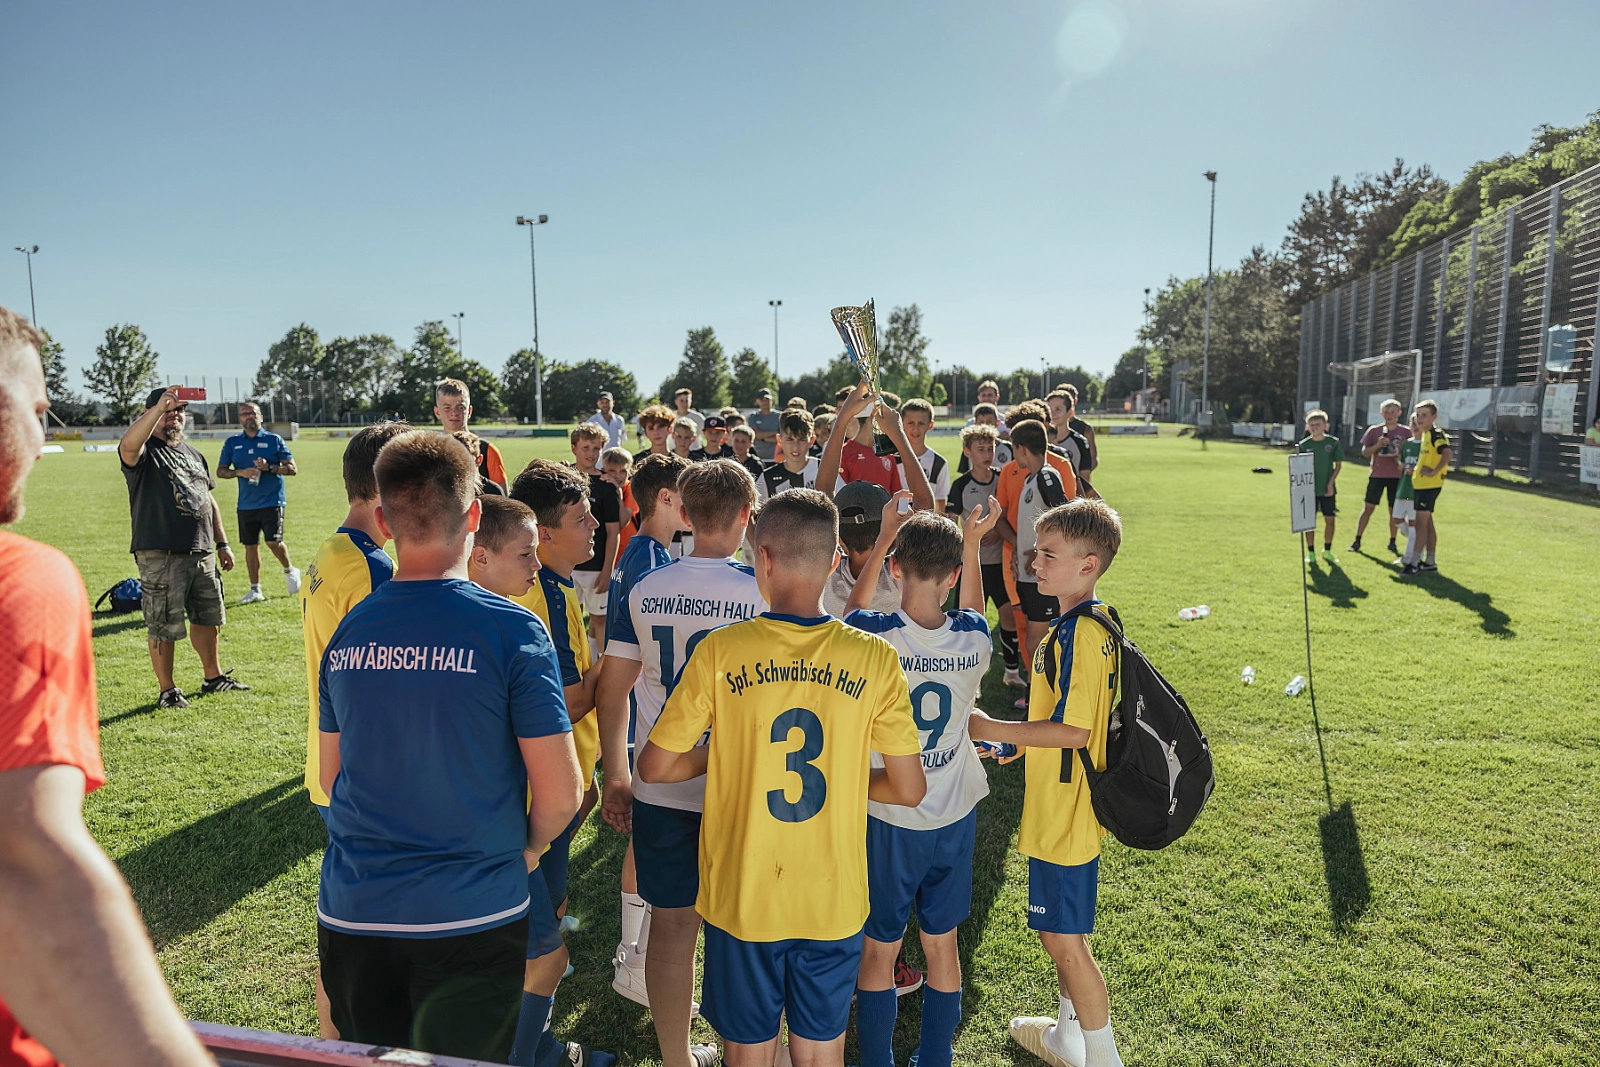 Spielszenen und Eindrücke - 11 Teamsports Junioren Cup 2022